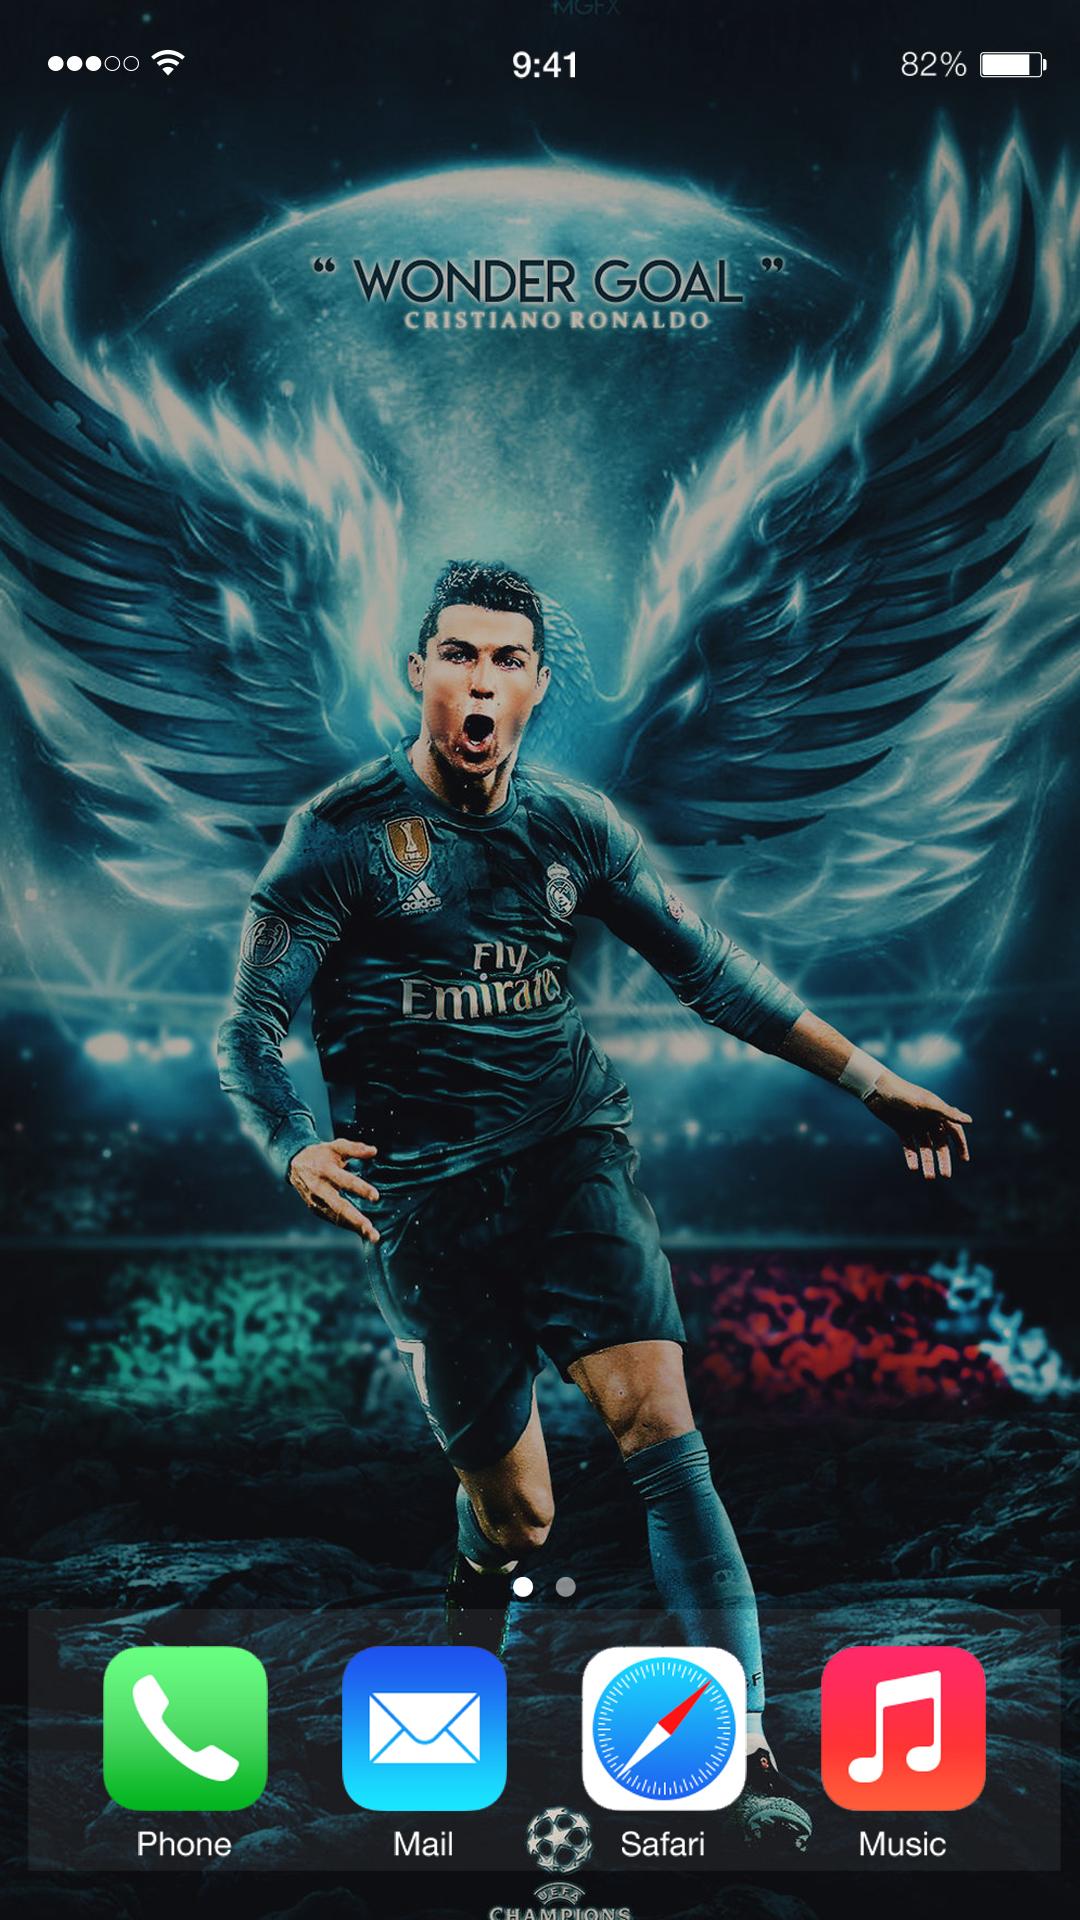 Cristiano Ronaldo Wallpapers: Tận hưởng vẻ đẹp và sự nổi tiếng của Cristiano Ronaldo thông qua bộ sưu tập những hình nền nghệ thuật vô cùng ấn tượng. Chất lượng hình ảnh tuyệt vời và độ phân giải cao sẽ khiến hình nền của bạn trở nên sống động và cuốn hút hơn bao giờ hết.